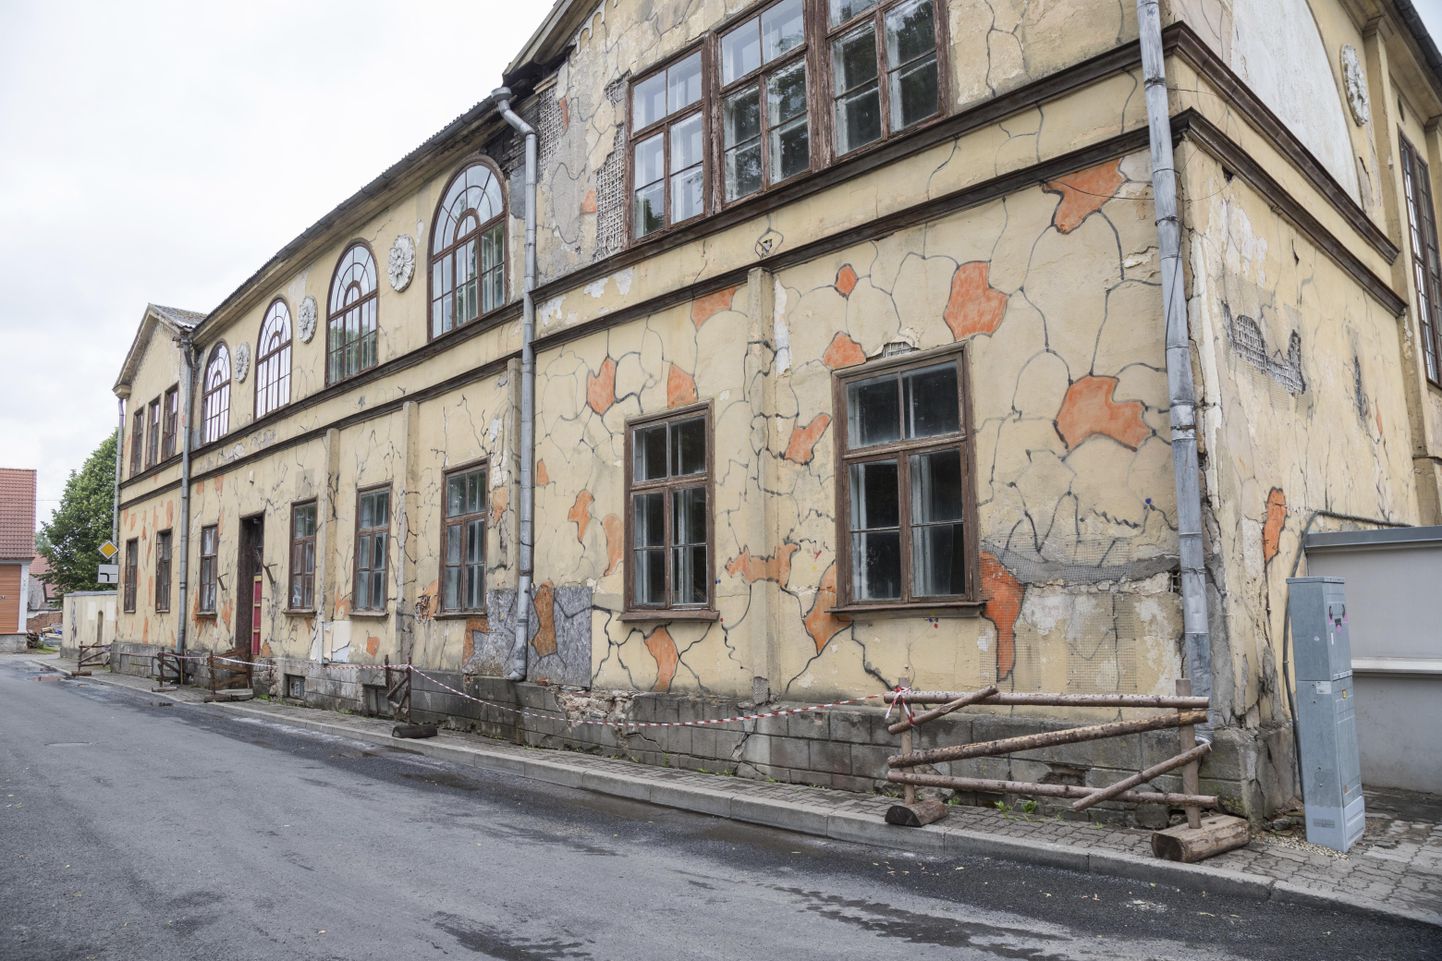 Vana koolimaja on sel sajandil kasutatud näitusesaali, laadaplatsi ja arhitektuuribüroo tööruumina, aga enamasti on see seisnud tühjana ja lagunenud.